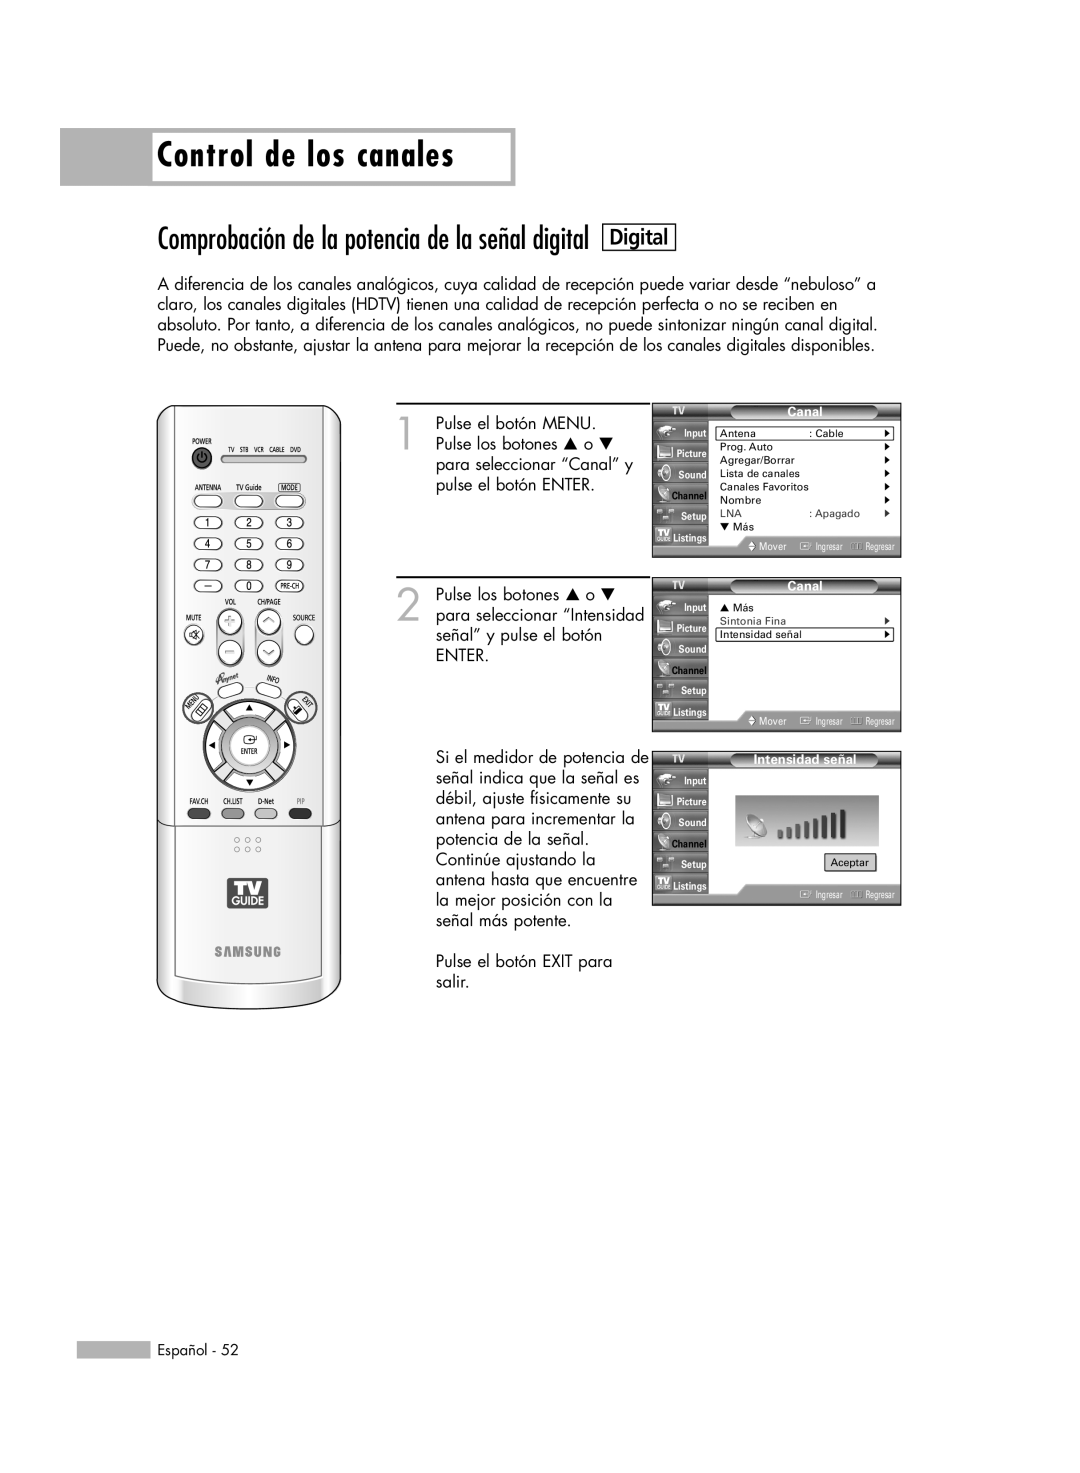 Samsung HL-R6178W, HL-R5078W, HL-R5678W Comprobación de la potencia de la señal digital, Digital, Control de los canales 